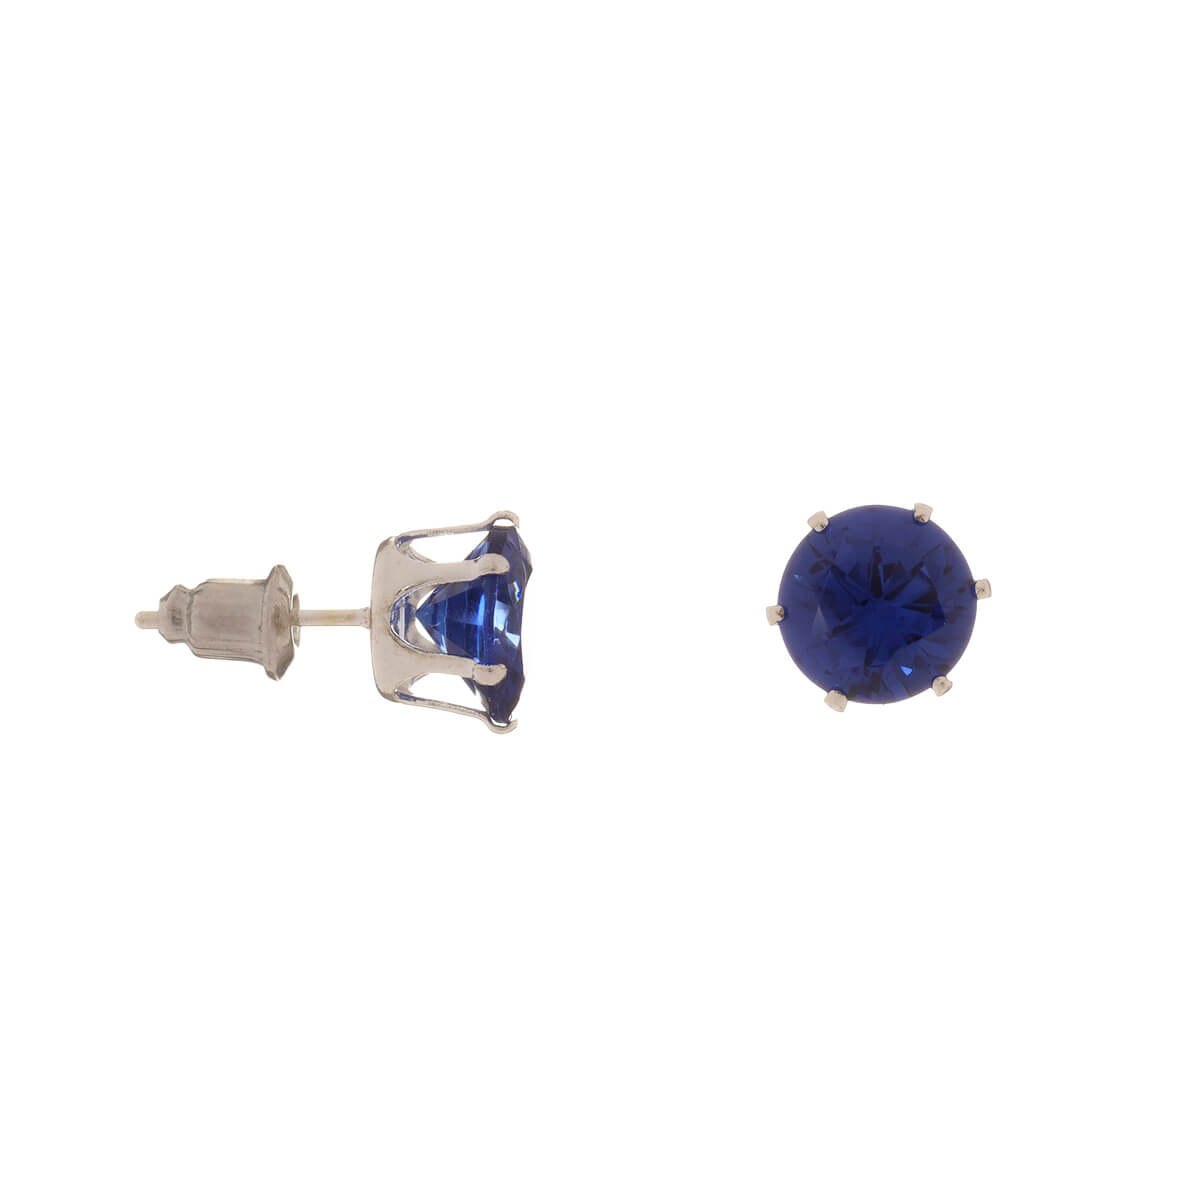 Glass stone earrings 8mm